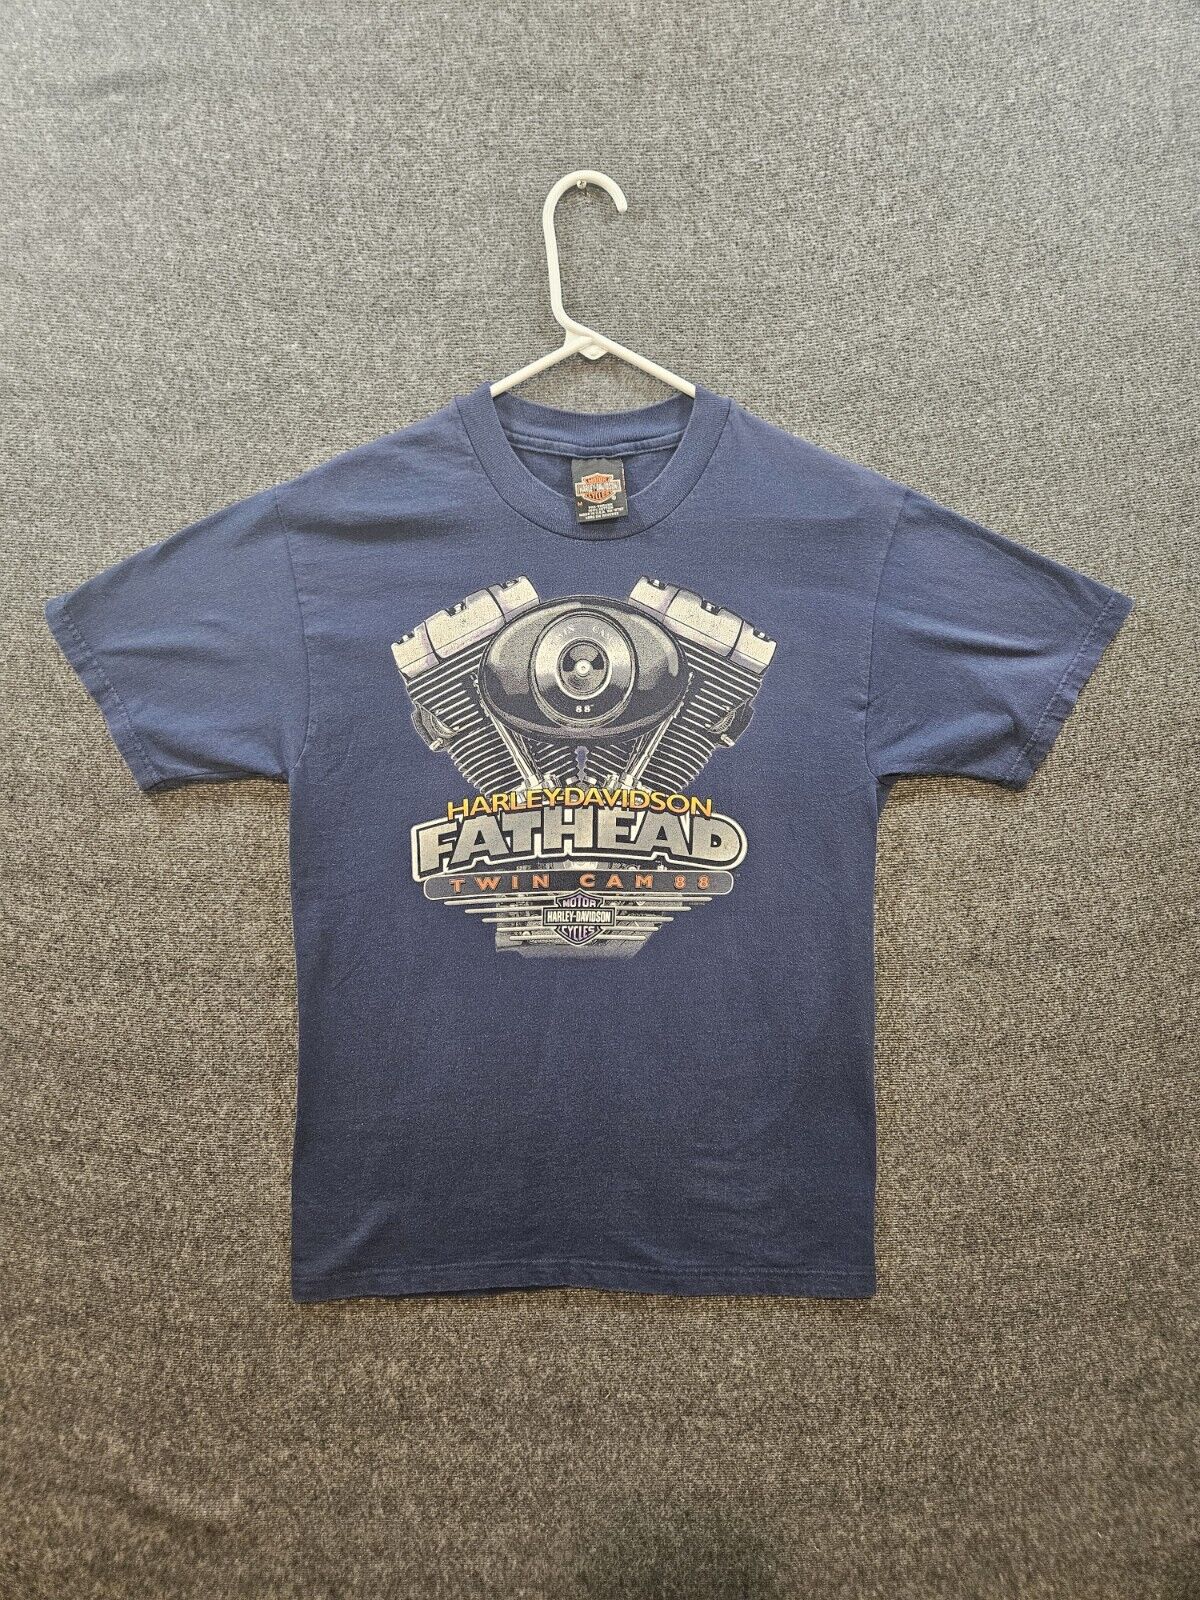 Vintage 1996 Harley Davidson Fat Head Graphic Biker T-Shirt Mens MED Blue TEXAS 